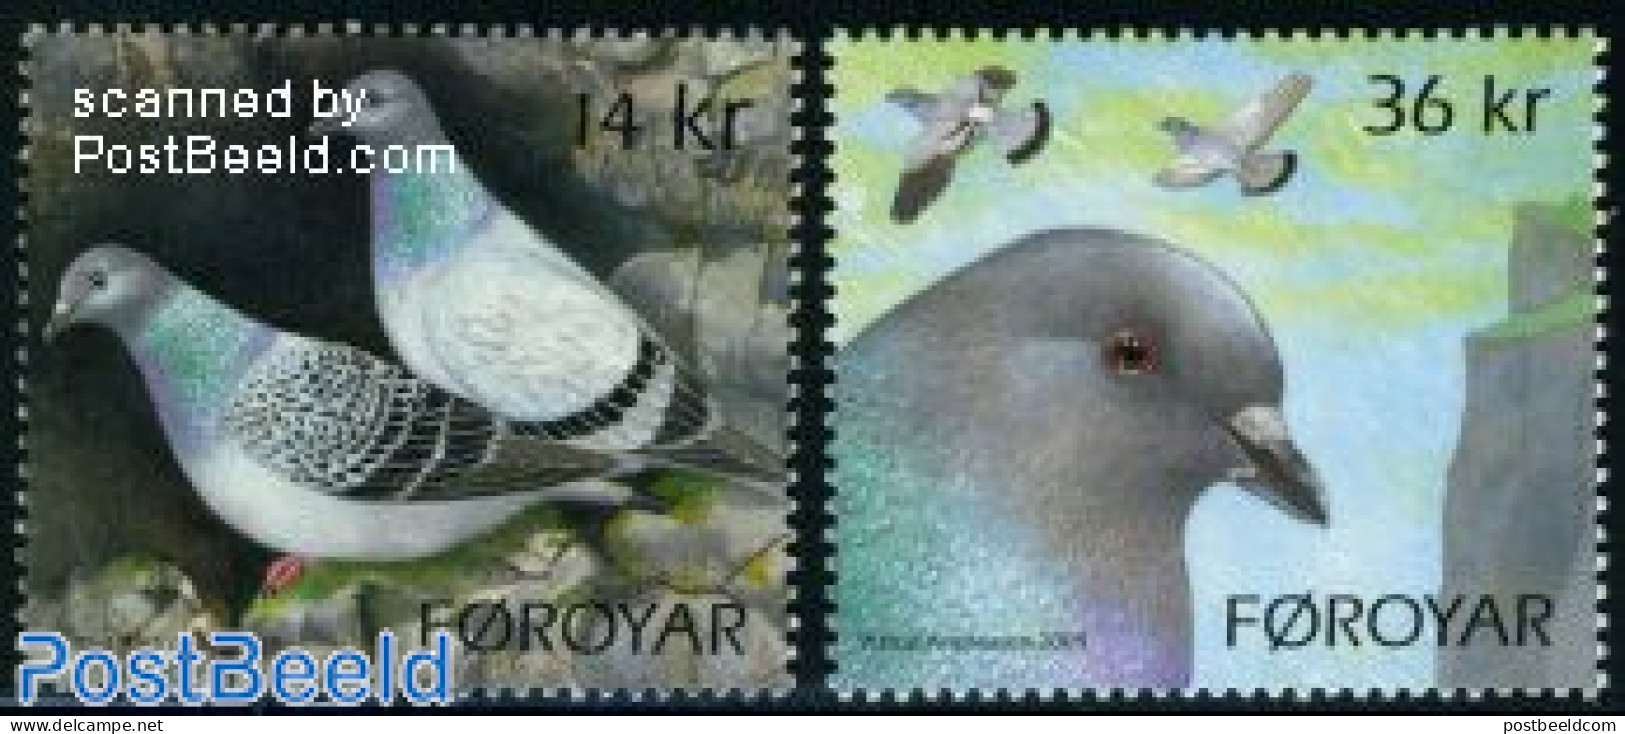 Faroe Islands 2009 Pigeons 2v, Mint NH, Nature - Birds - Autres & Non Classés